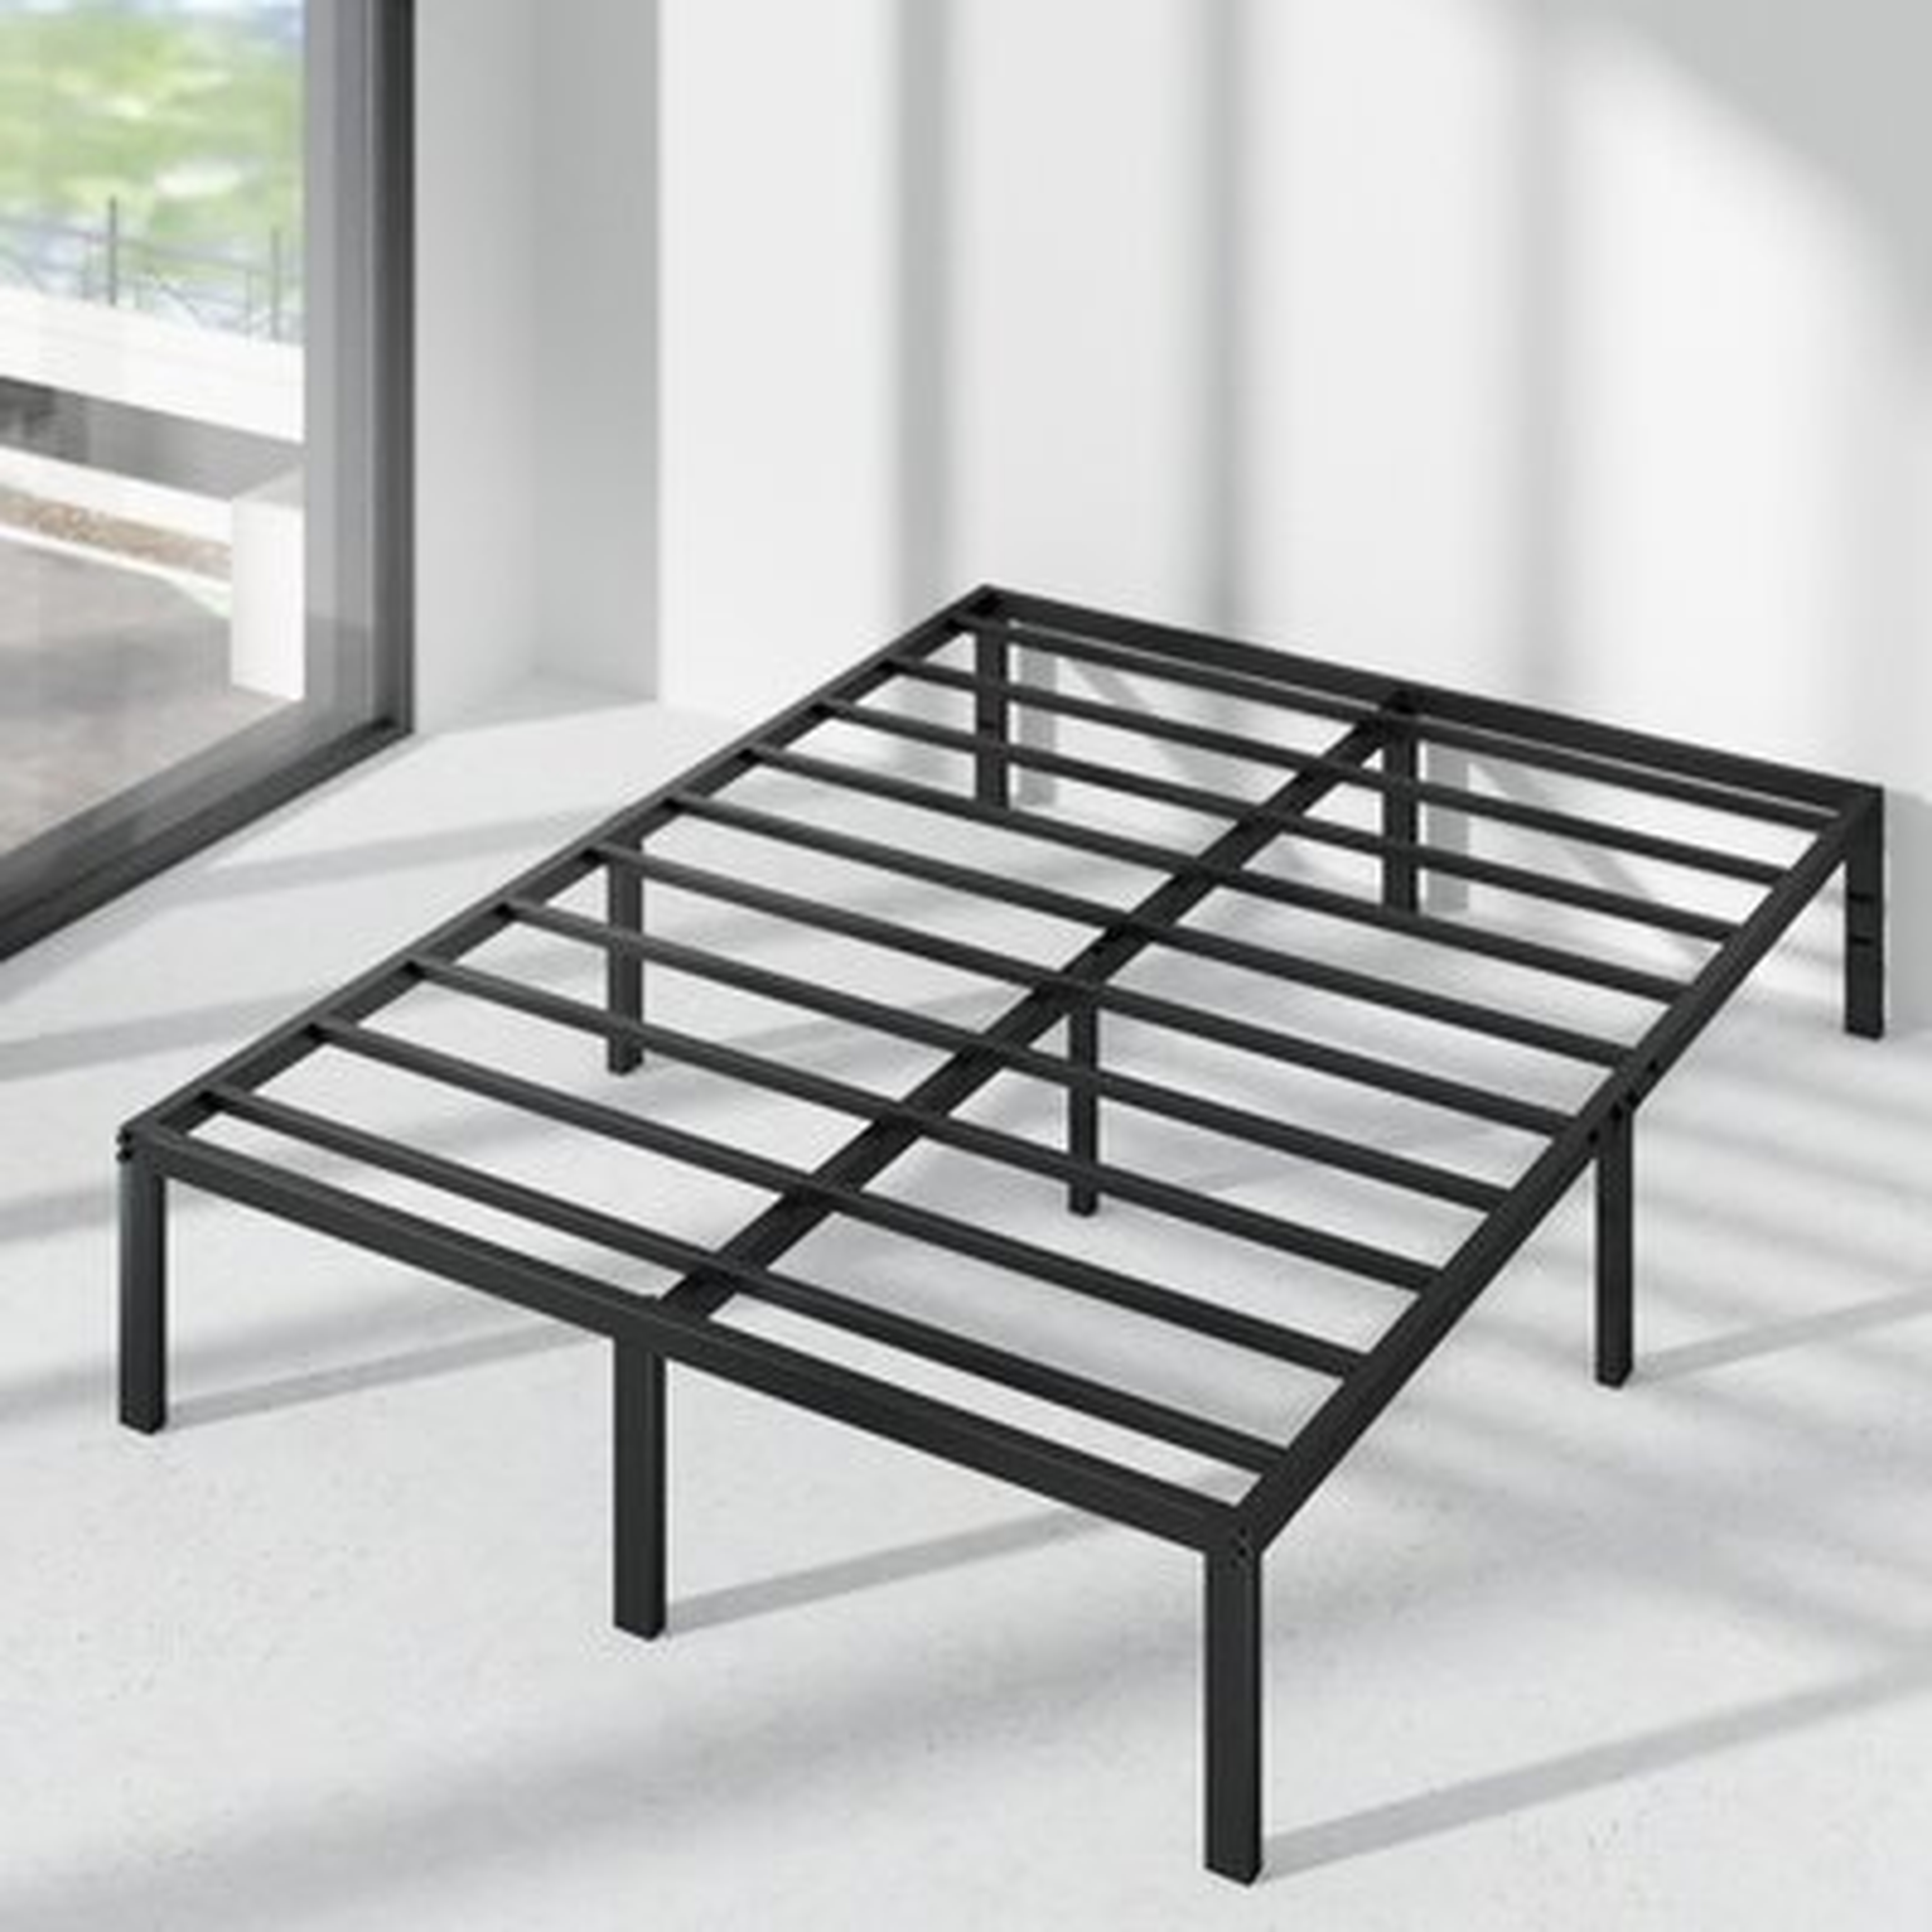 Blough 14" Steel Bed Frame - Wayfair